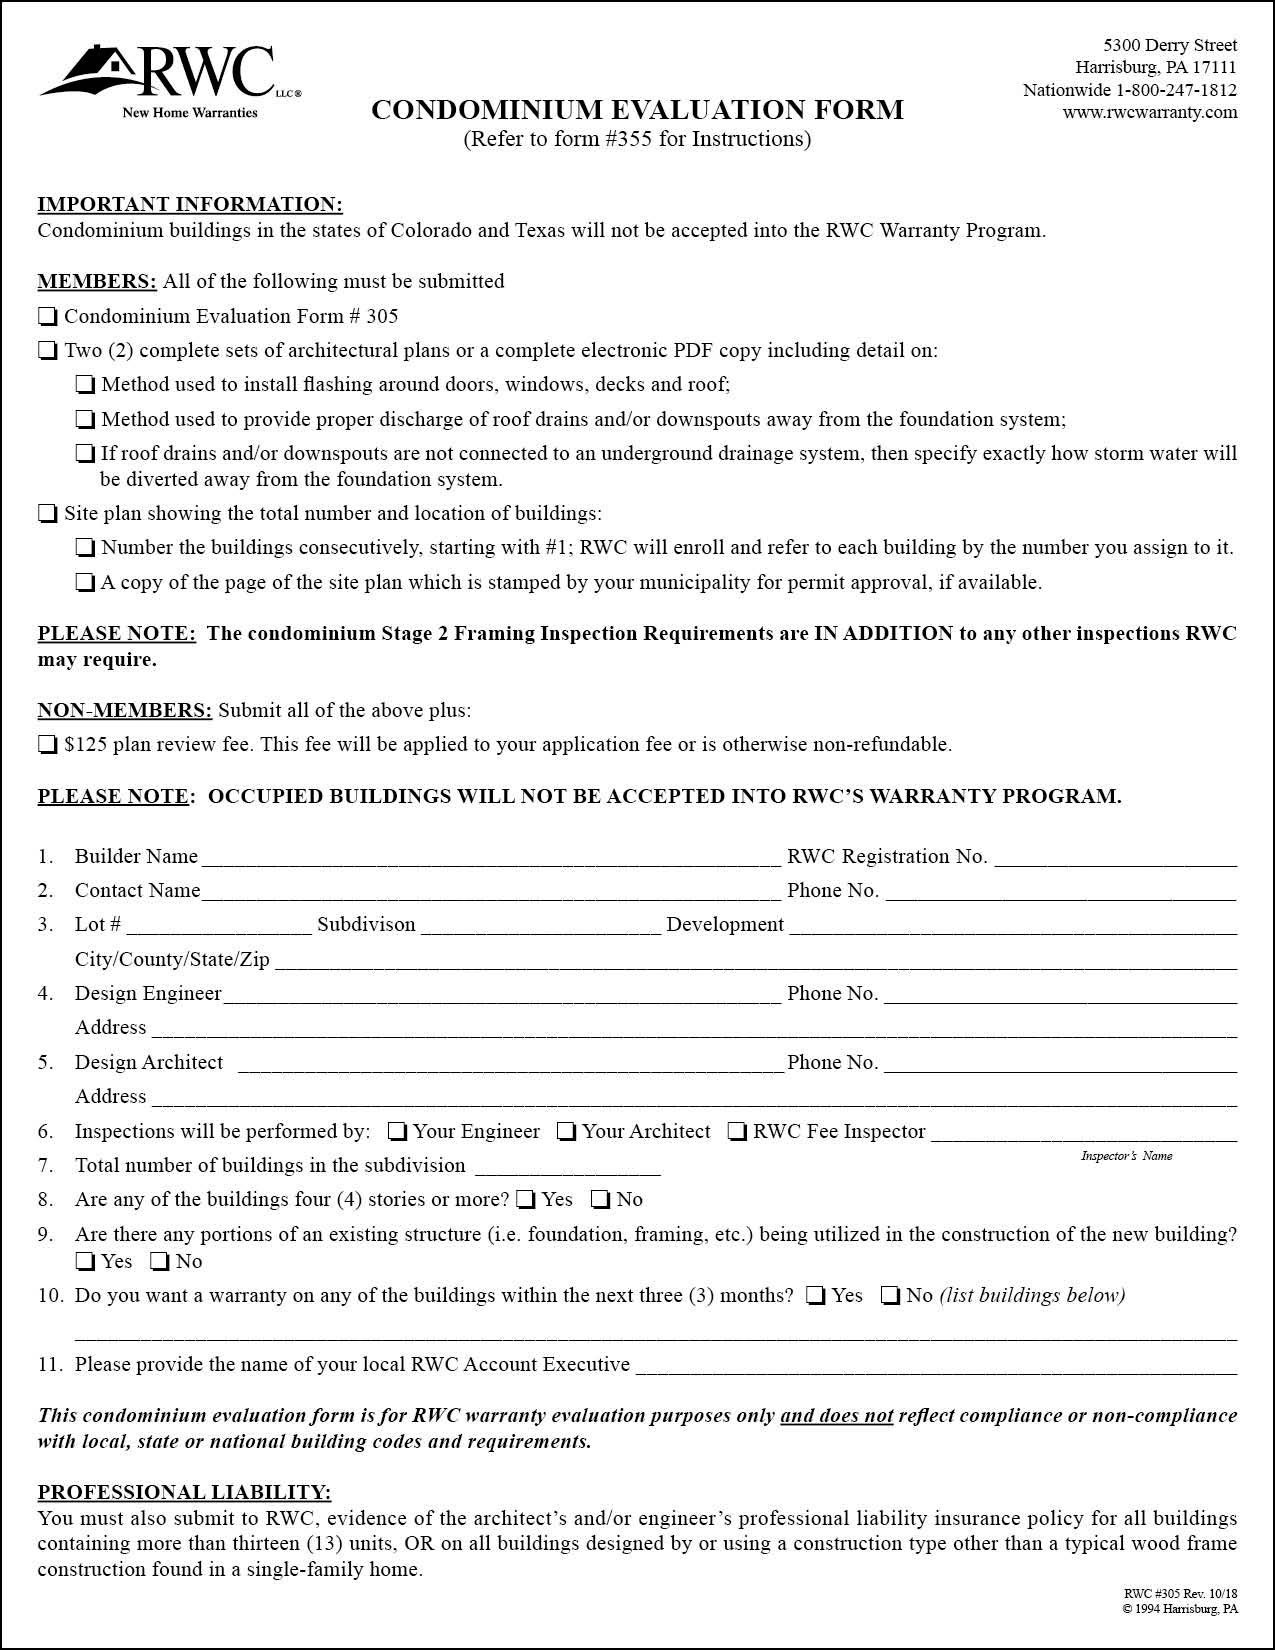 RWC Condominium Evaluation Form